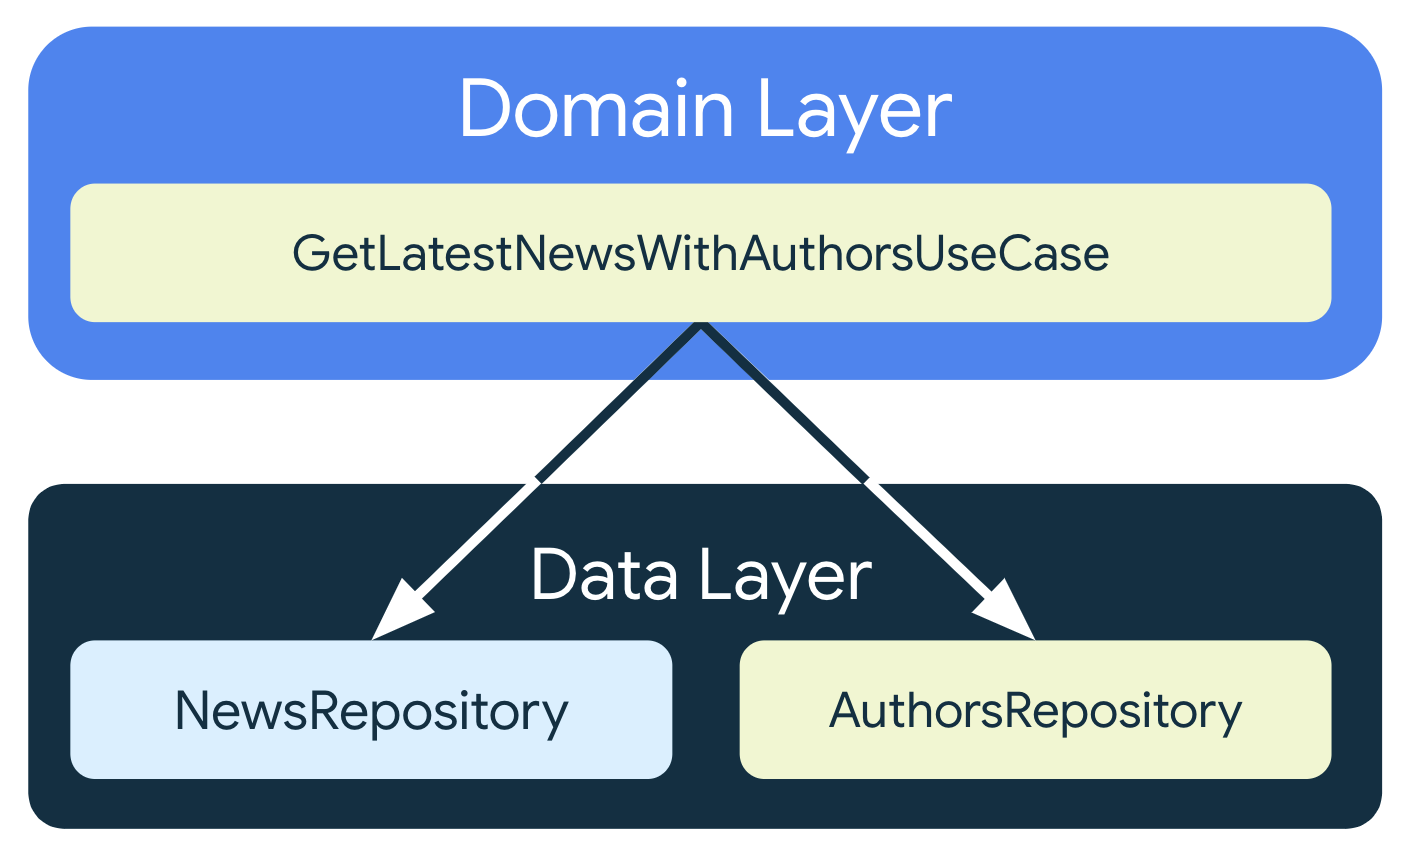 GetLatestNewsWithAuthorsUseCase phụ thuộc vào hai lớp lưu trữ từ lớp dữ liệu: NewsRepository và AuthorsRepository.